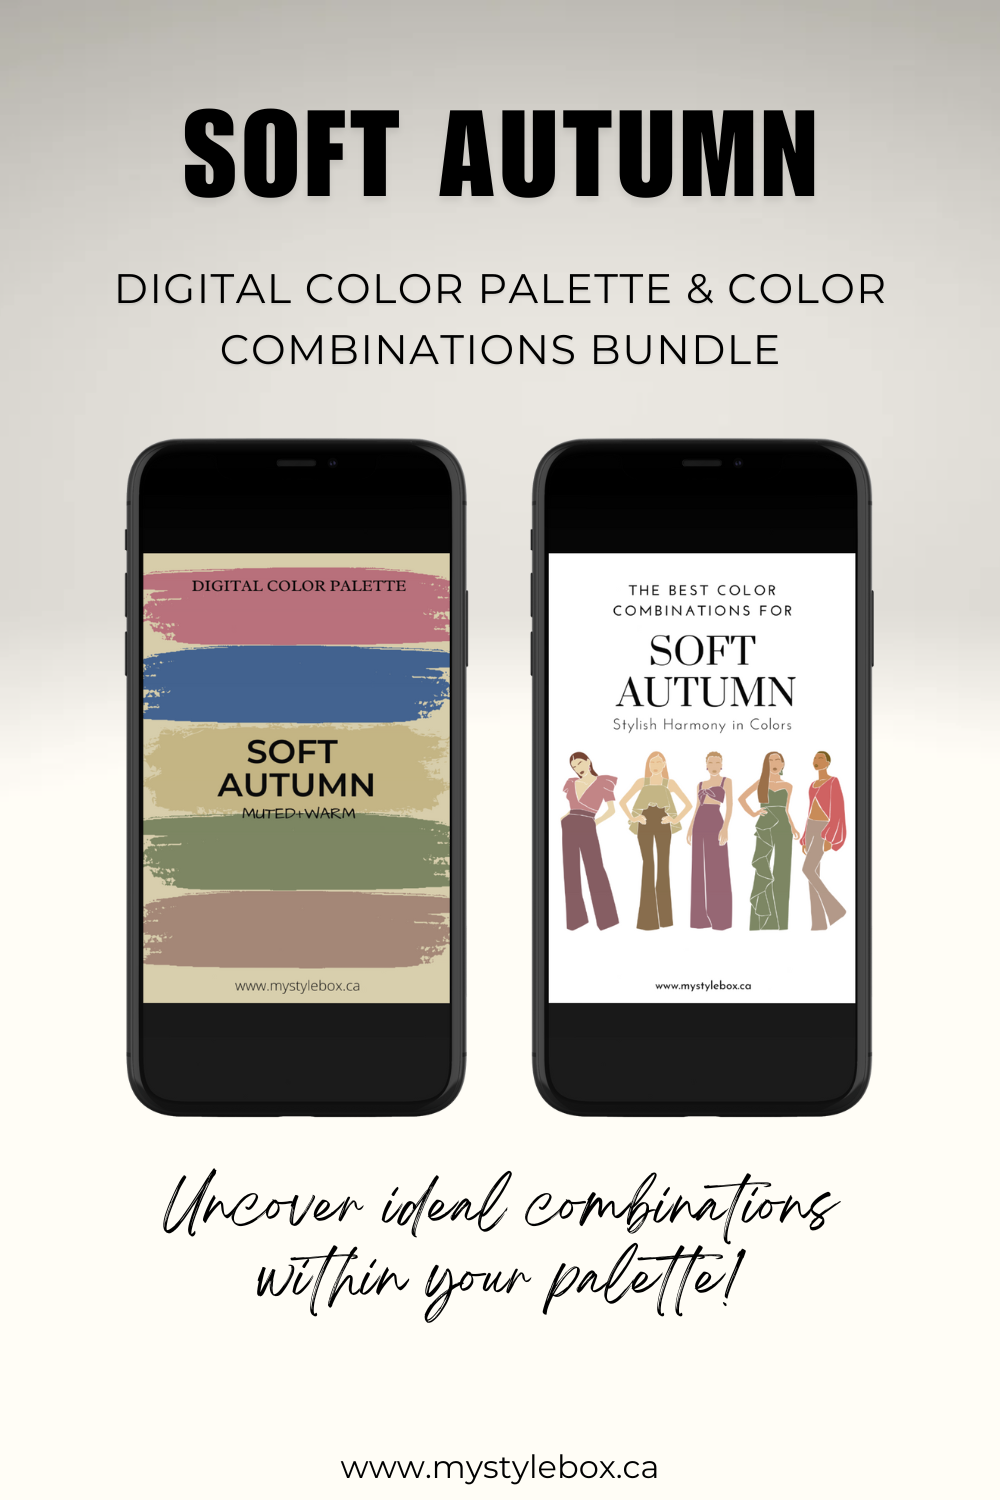 Soft Autumn Season Digital Color Palette and Color Combinations